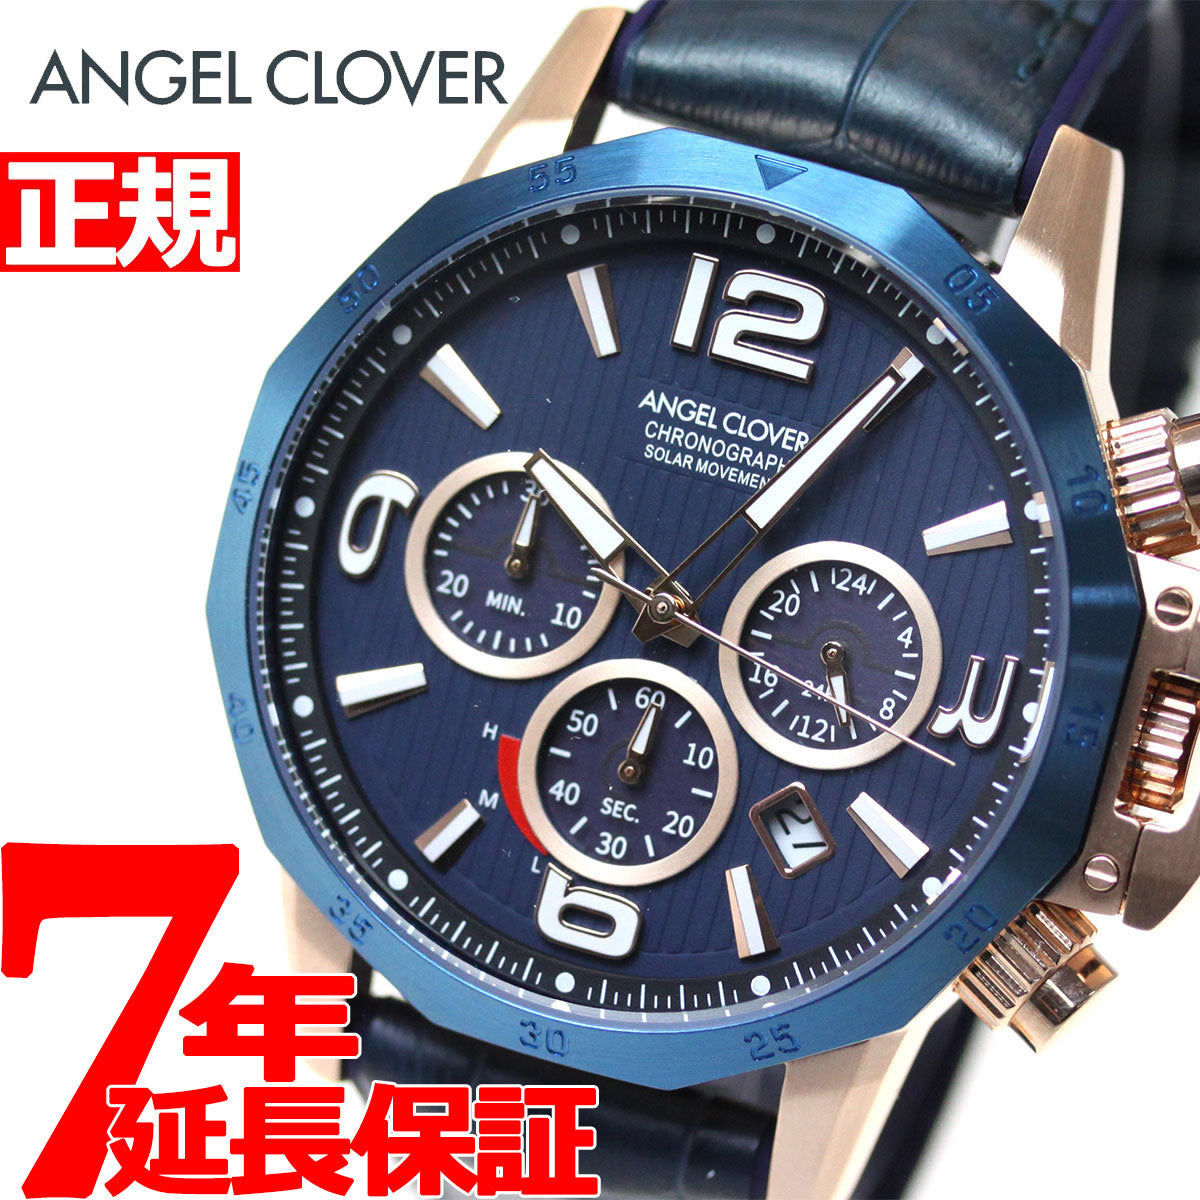 エンジェルクローバー ANGEL CLOVER ソーラー 腕時計 メンズ タイムクラフトソーラー TIME CRAFT SOLAR クロノグラフ NTS45PNV-NV